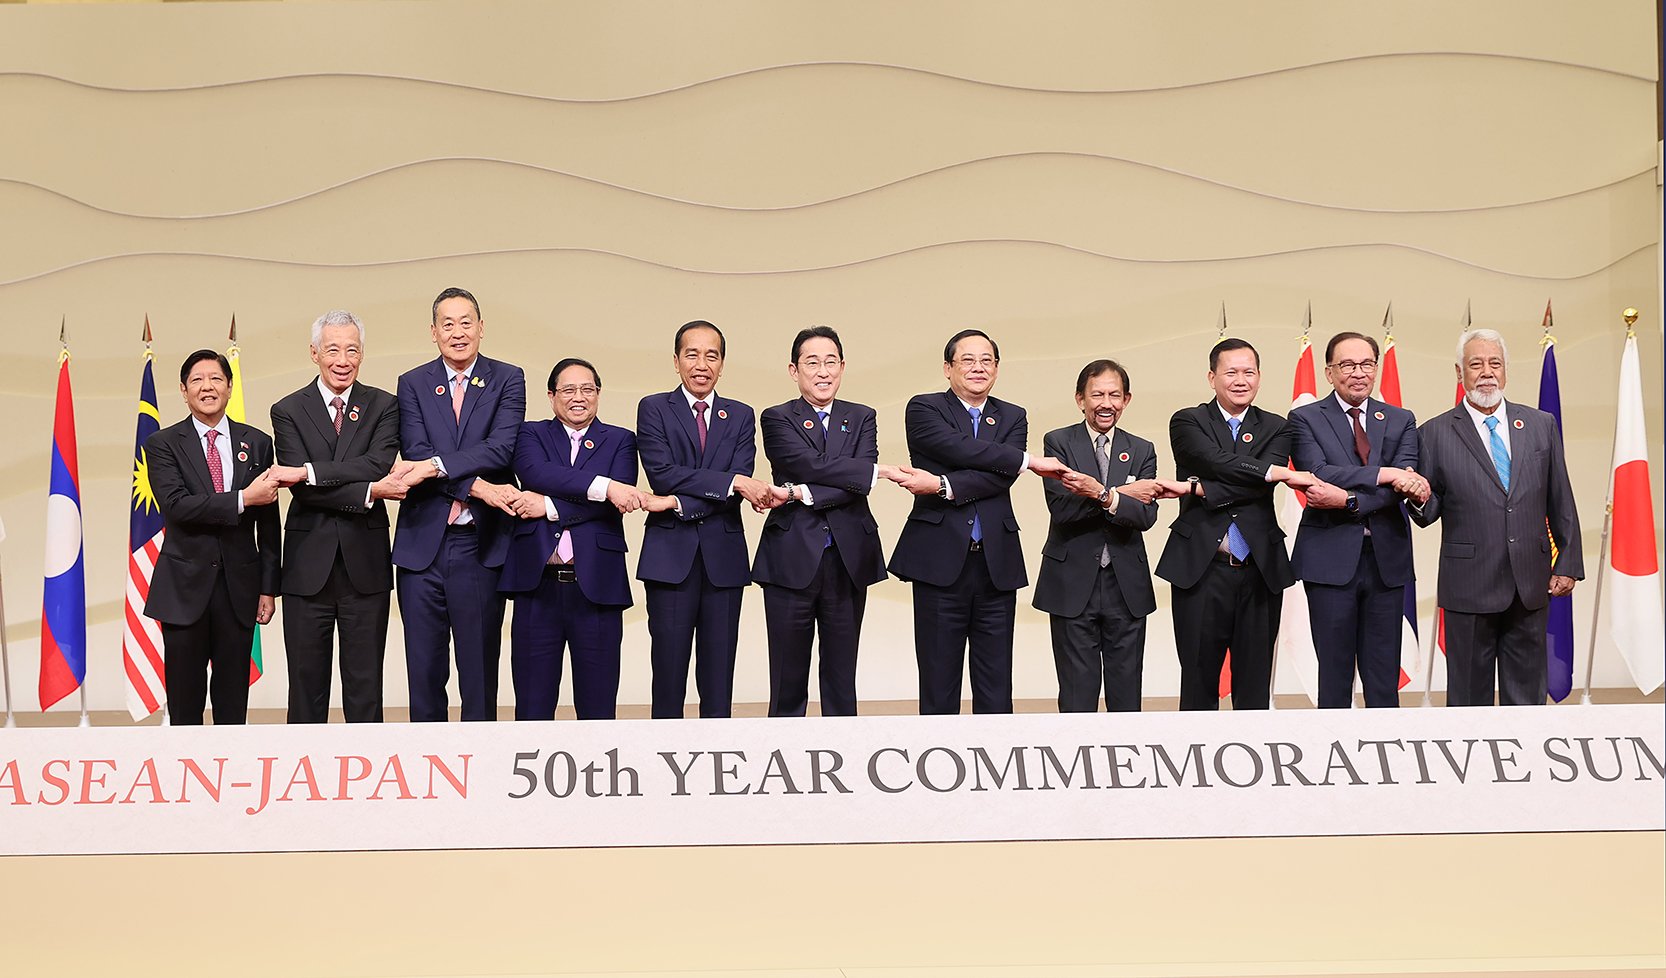 Hội nghị cấp cao kỷ niệm 50 năm quan hệ ASEAN-Nhật Bản là dịp để lãnh đạo cấp cao hai bên cùng kiểm điểm thành quả hợp tác, từ đó đề ra định hướng phát triển quan hệ trong giai đoạn mới.